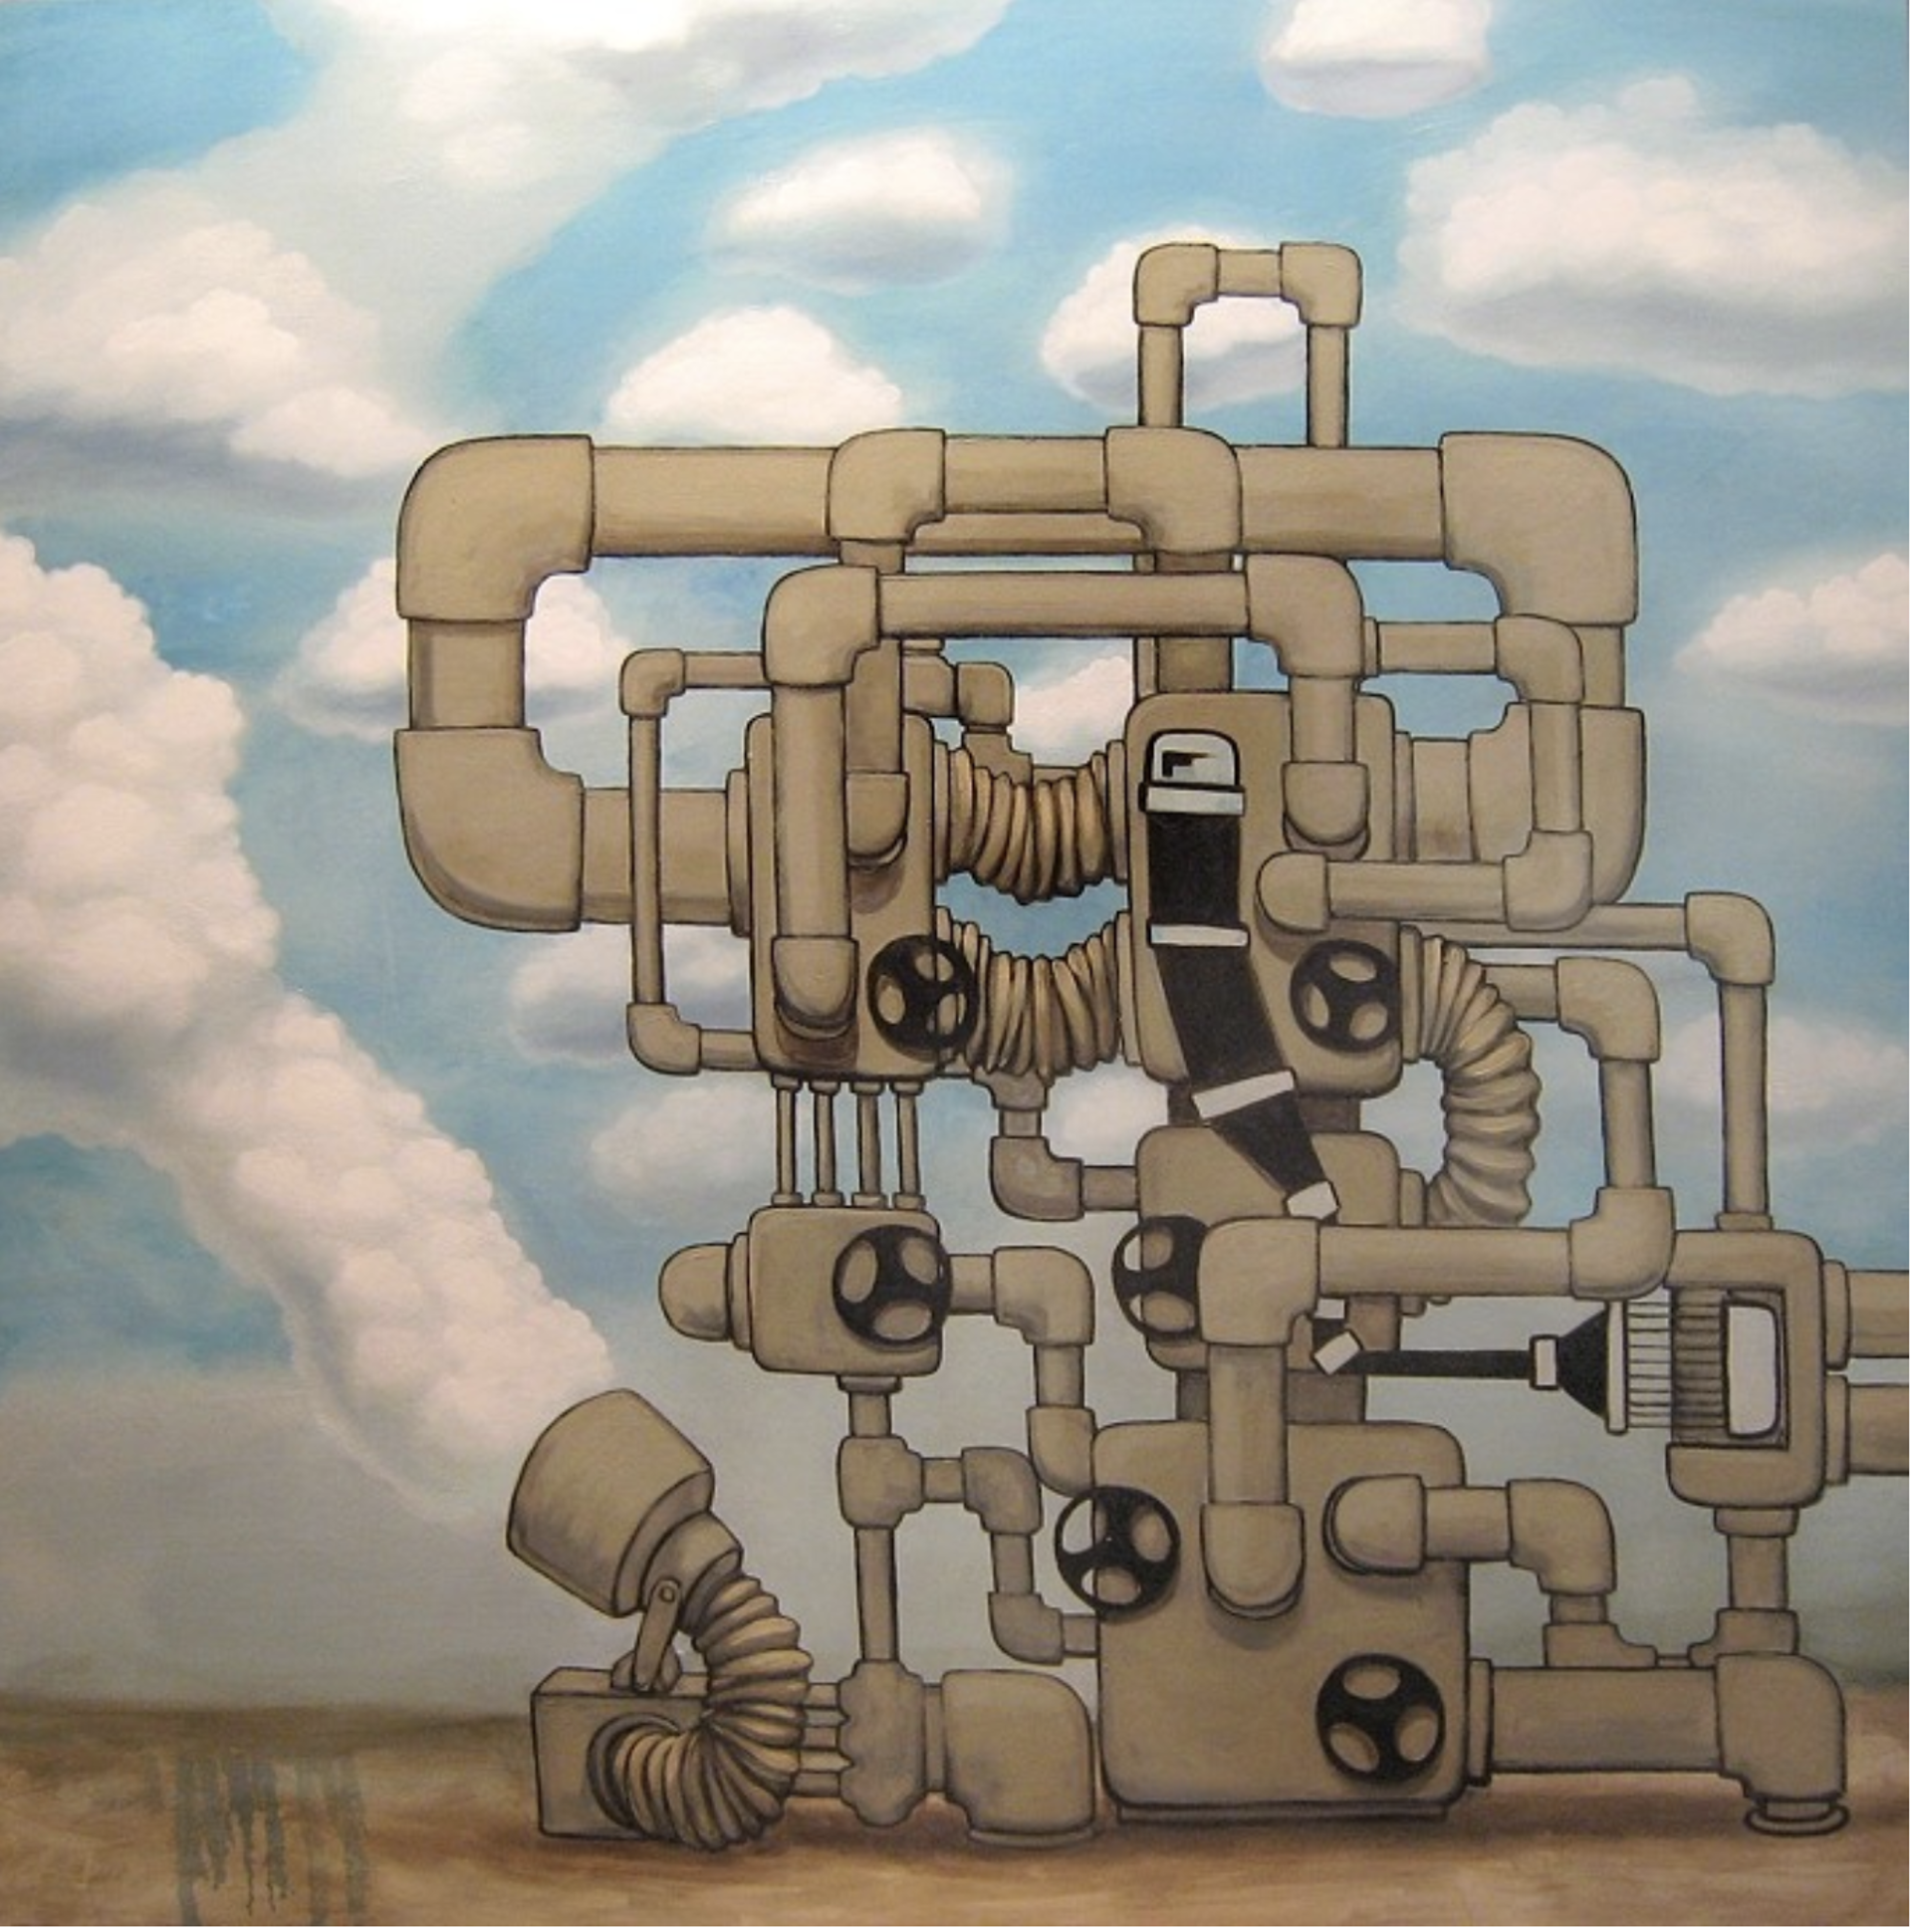 Cloud Factory by Matt Lively